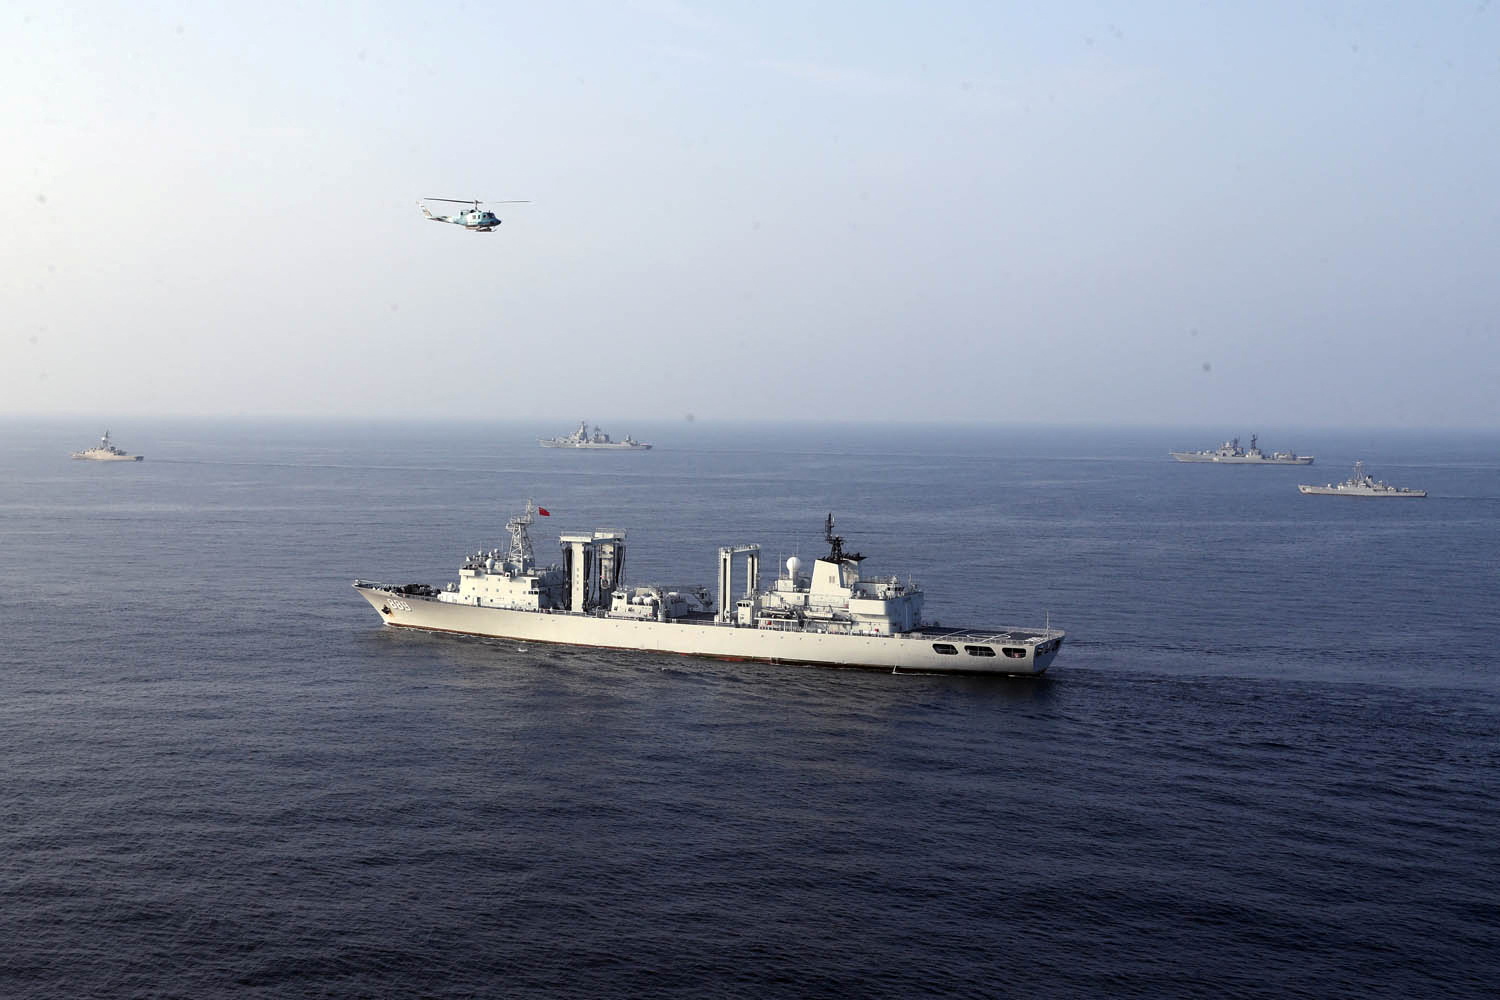 FOTO DE ARCHIVO: buques de guerra asisten a un ejercicio naval conjunto de las armadas iraní, china y rusa en el norte del Océano Índico el 19 de enero de 2022. Foto tomada el 19 de enero de 2022. Ejército iraní/WANA (West Asia News Agency) vía REUTERS